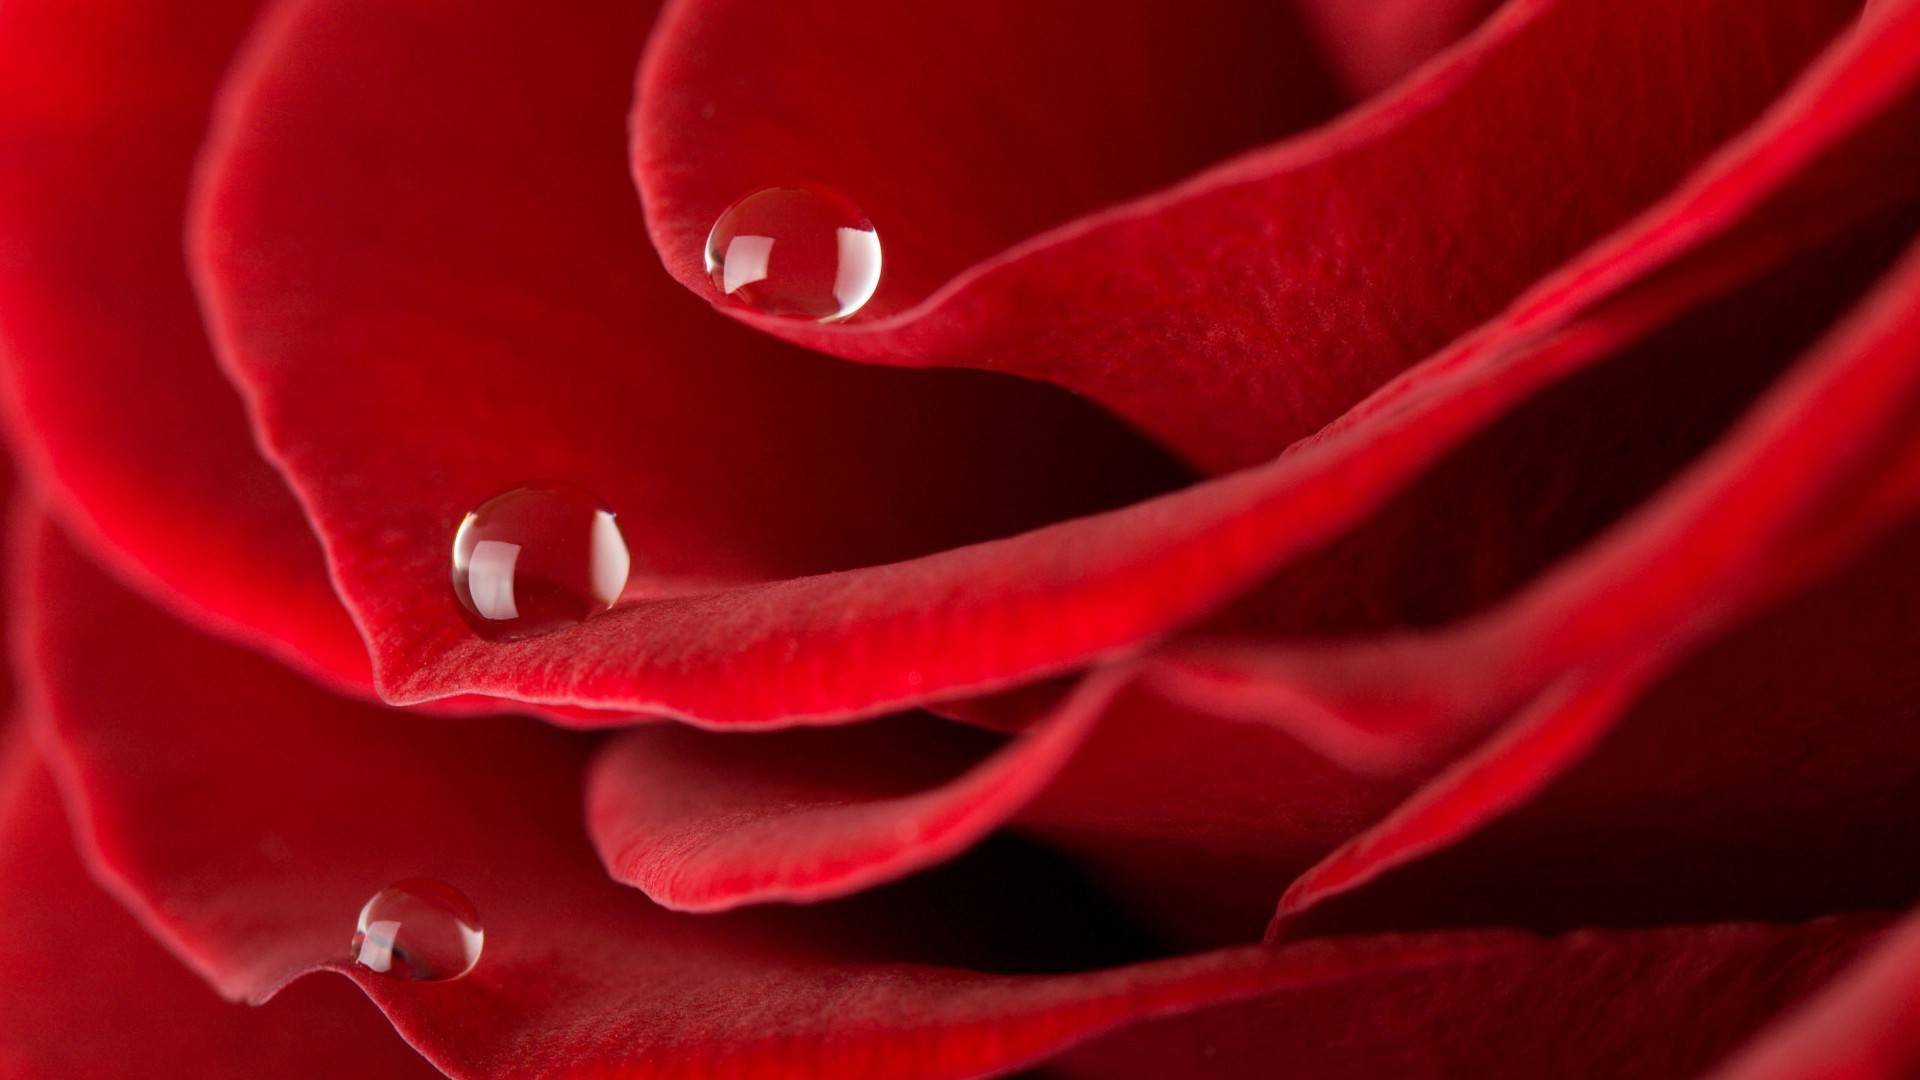 крупным планом любовь романтика роза романтический цветок нежный флора лепесток ботанический юбилей цвет сад блюминг красивые природа росы подарок рабочего стола падение